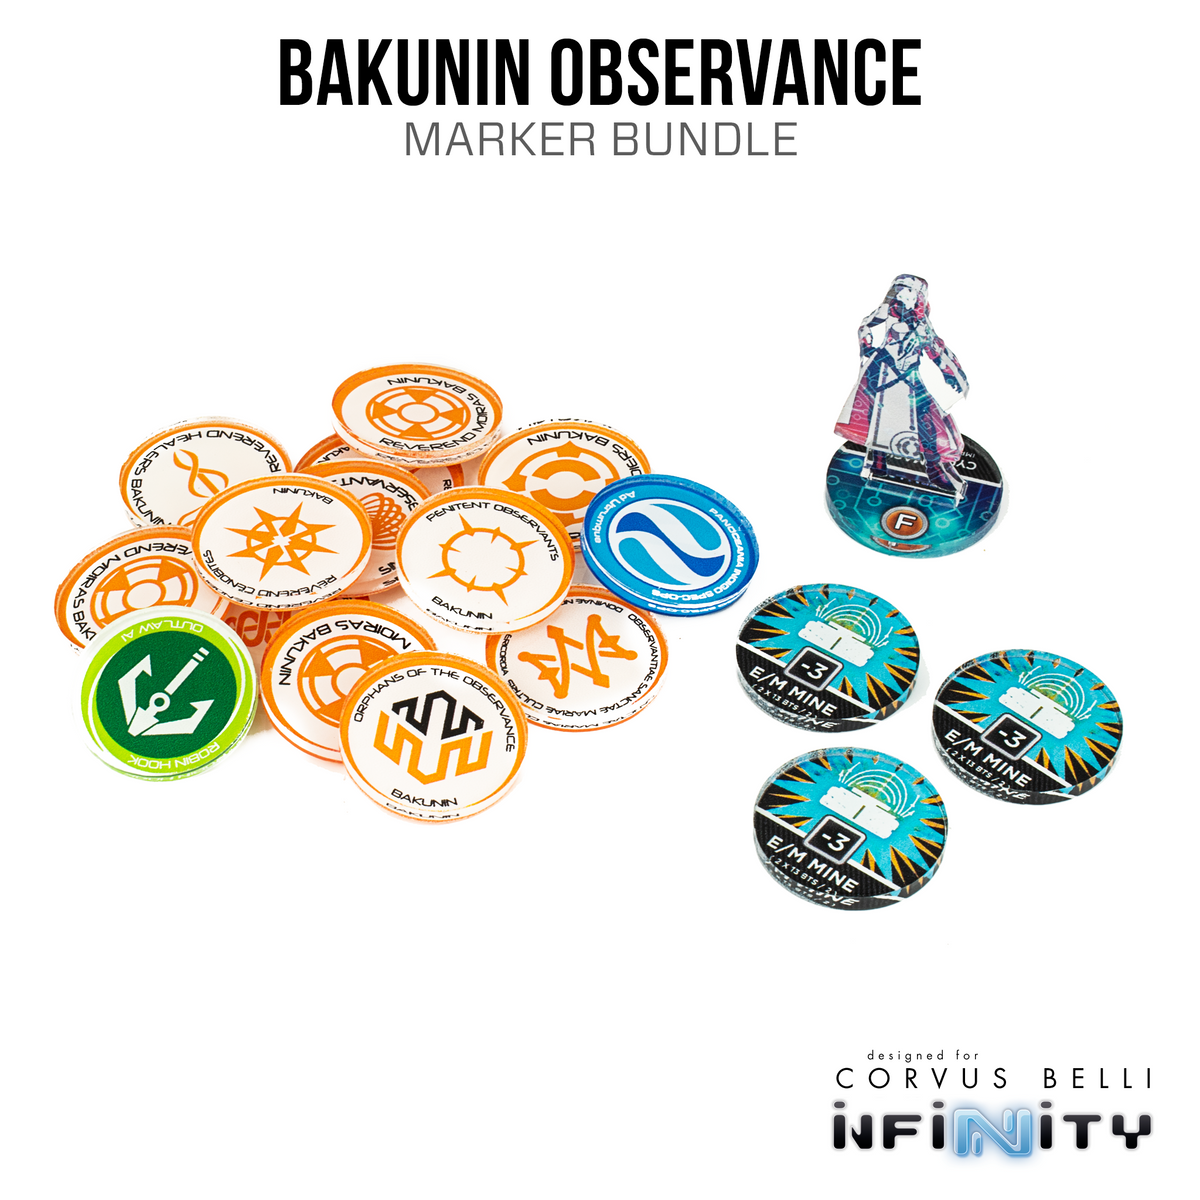 Bakunin Observance Marker Bundle